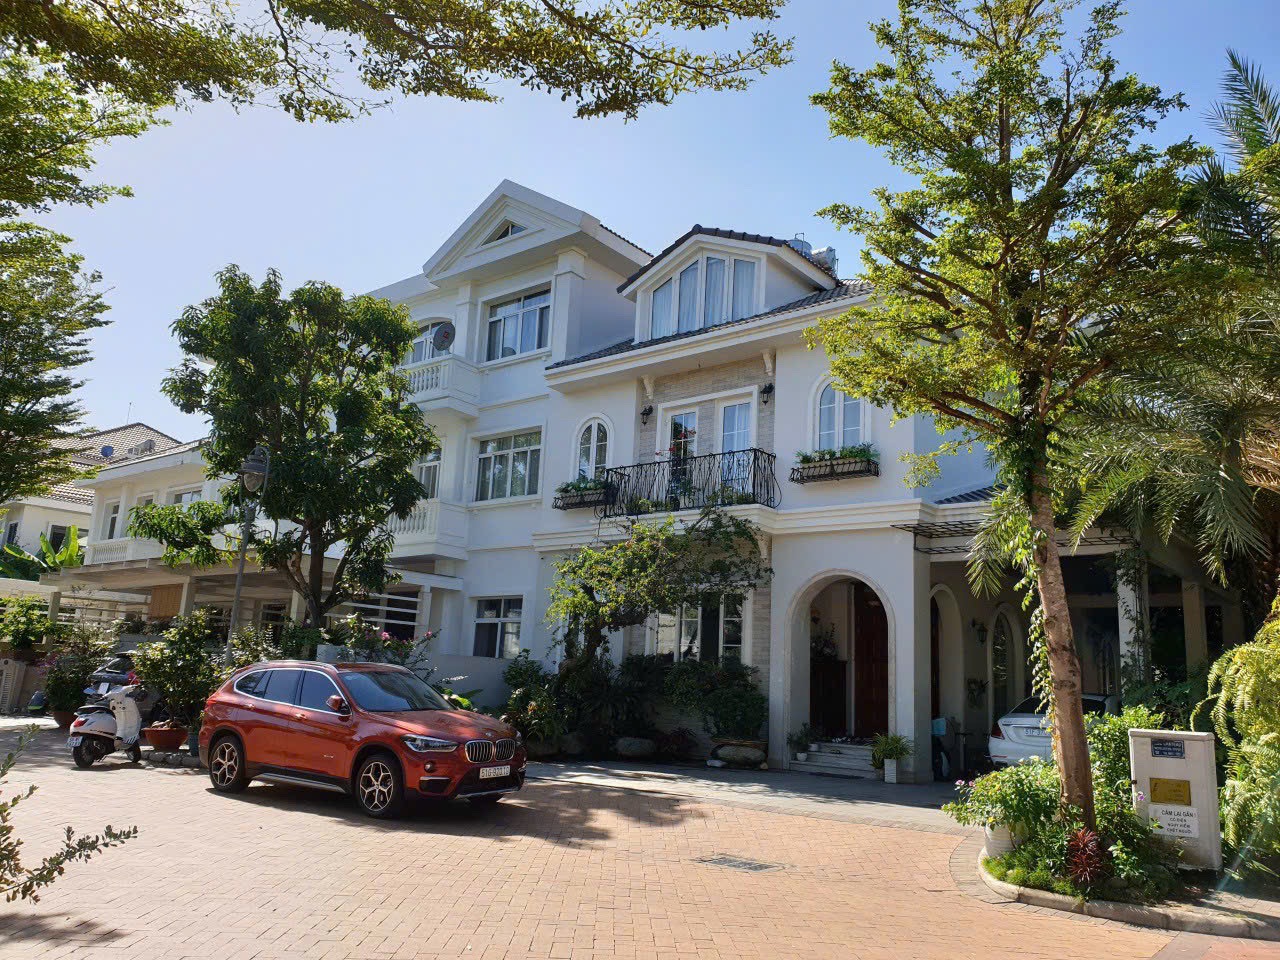 Bán biệt thự Saigon Pearl - Bình Thạnh sát sông SG giá 73 ty rẻ nhất khu, DT 7x21m - hầm + 4 lầu